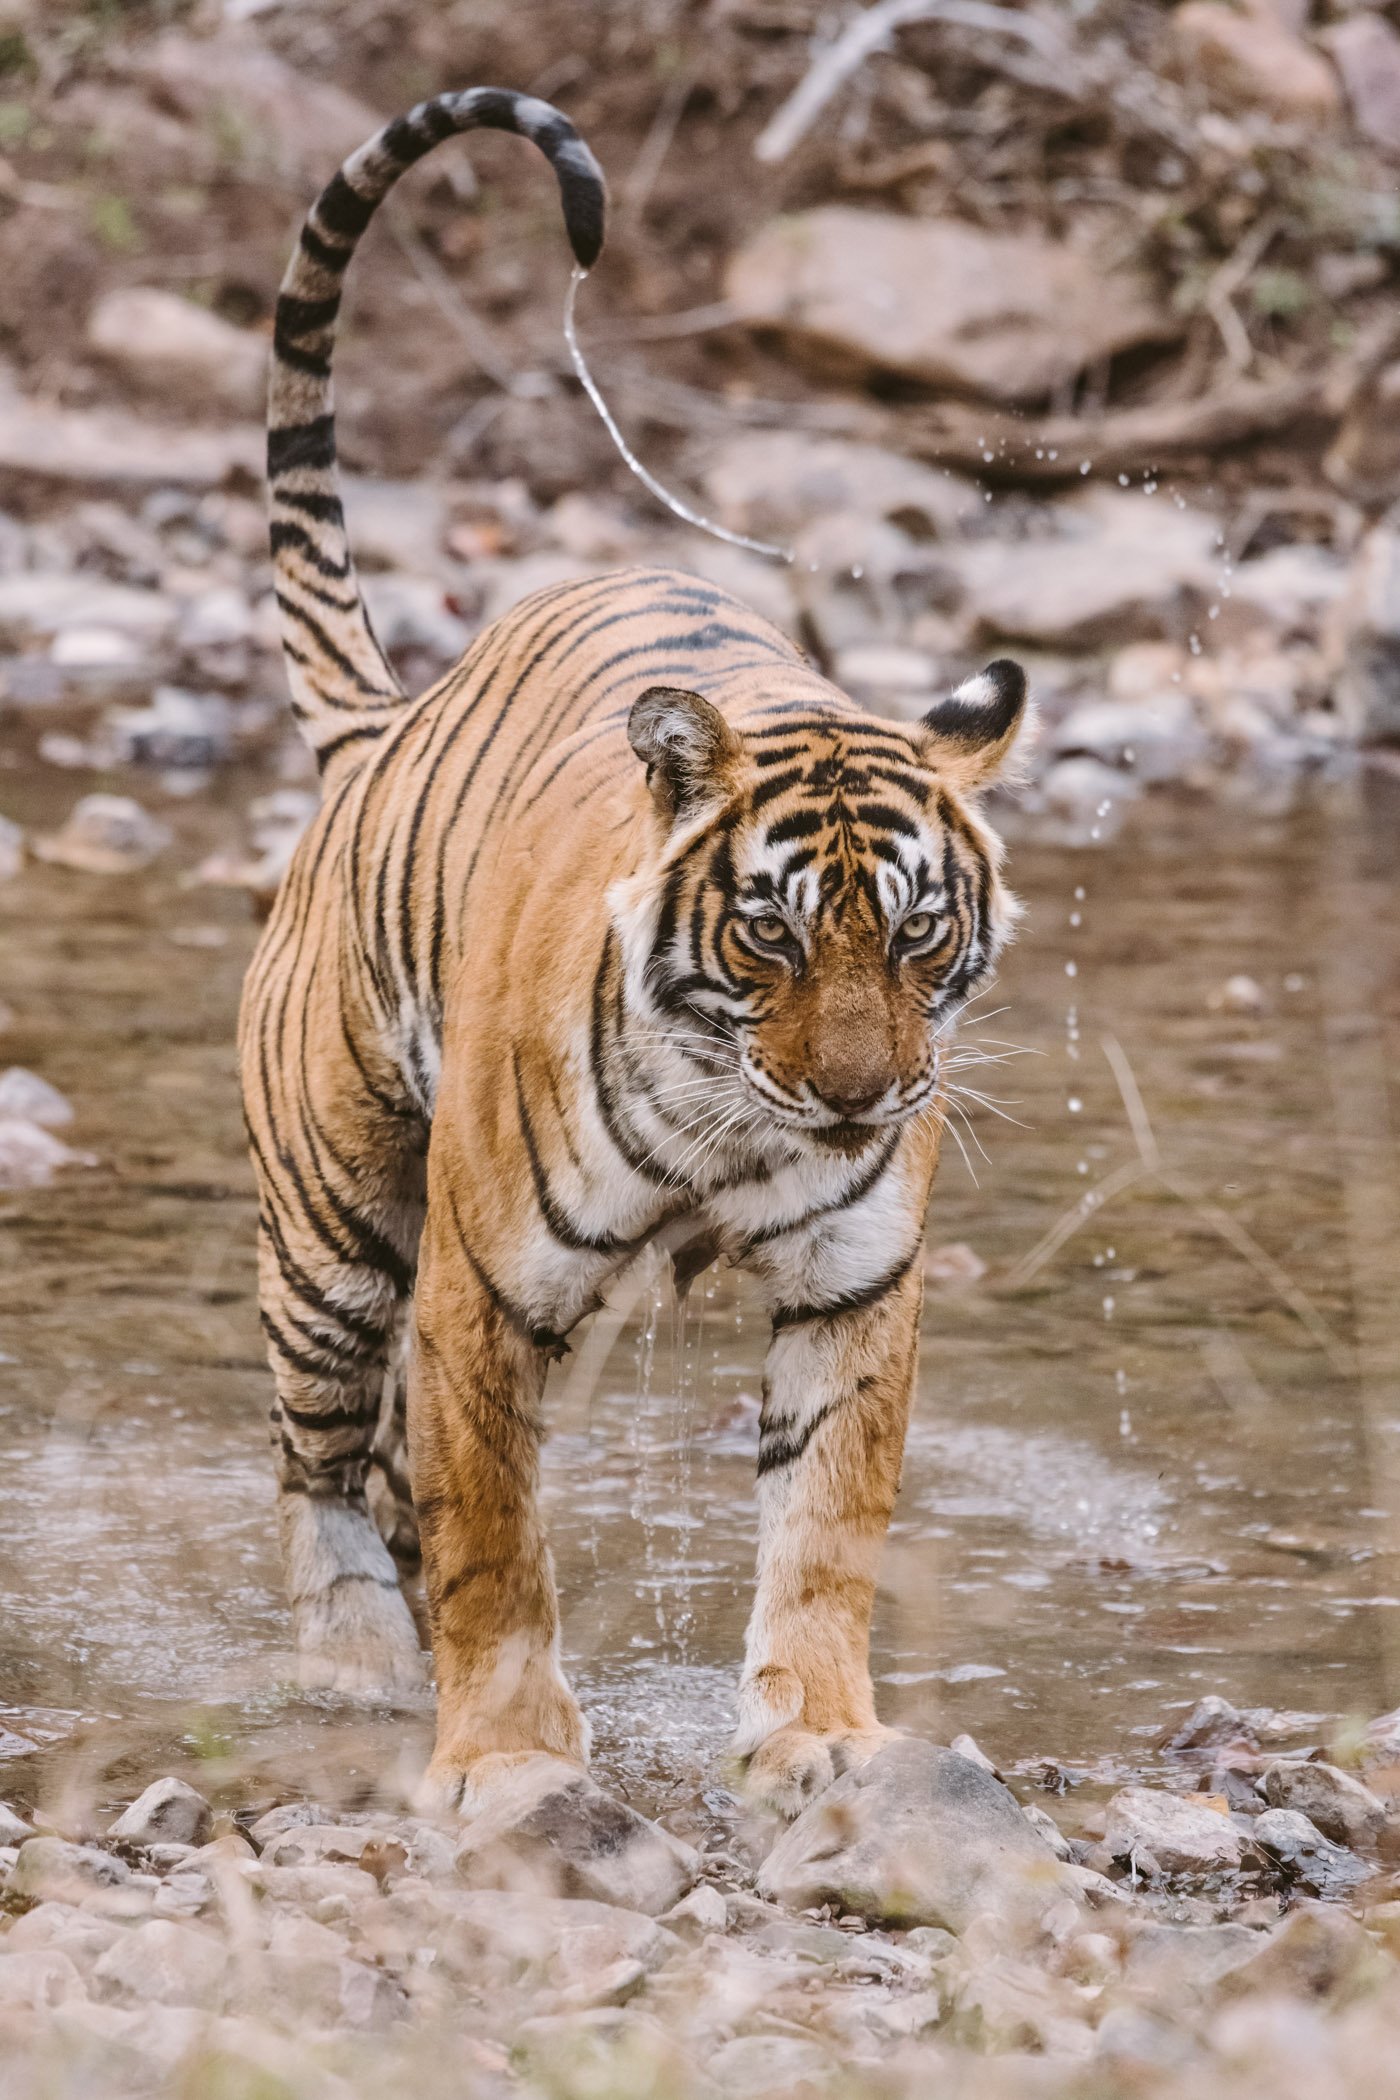 Tiger Safari in Rajasthan